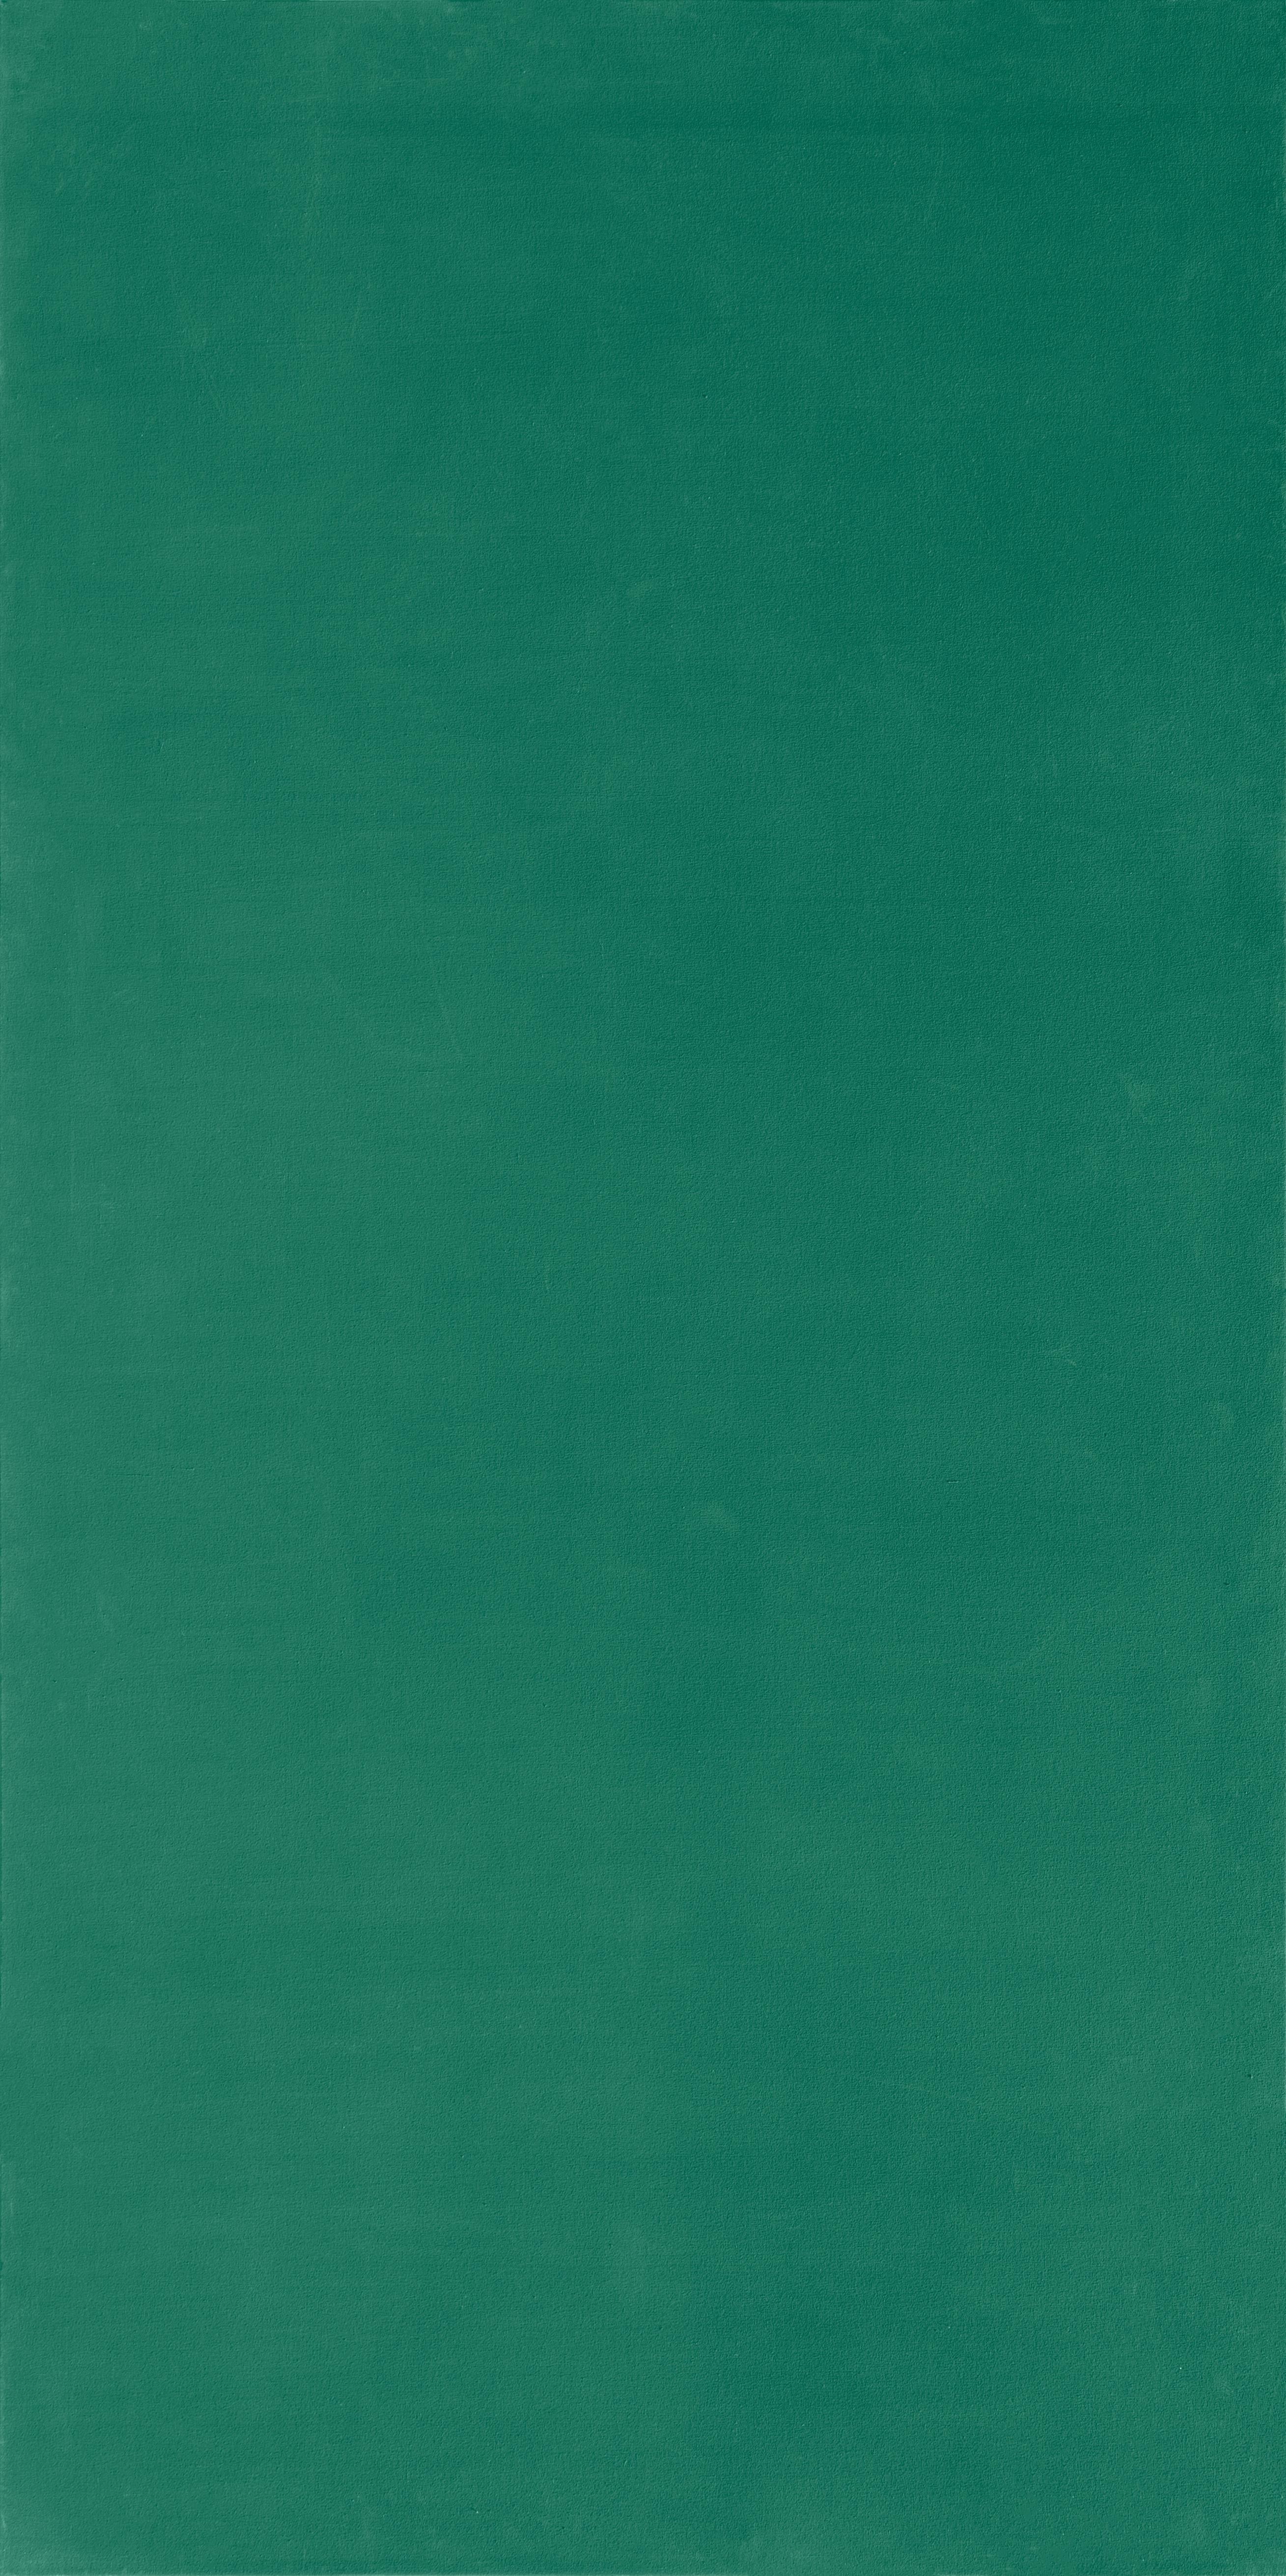 Großformatiges monochromes Gemälde von Olivier Mosset in einem tiefen Grünton. Mosset begann sich Ende der 1970er Jahre, auf dem Höhepunkt des Neo-Expressionismus, für monochrome Werke zu interessieren.

Leinwand Größe: 110 x 55 Zoll